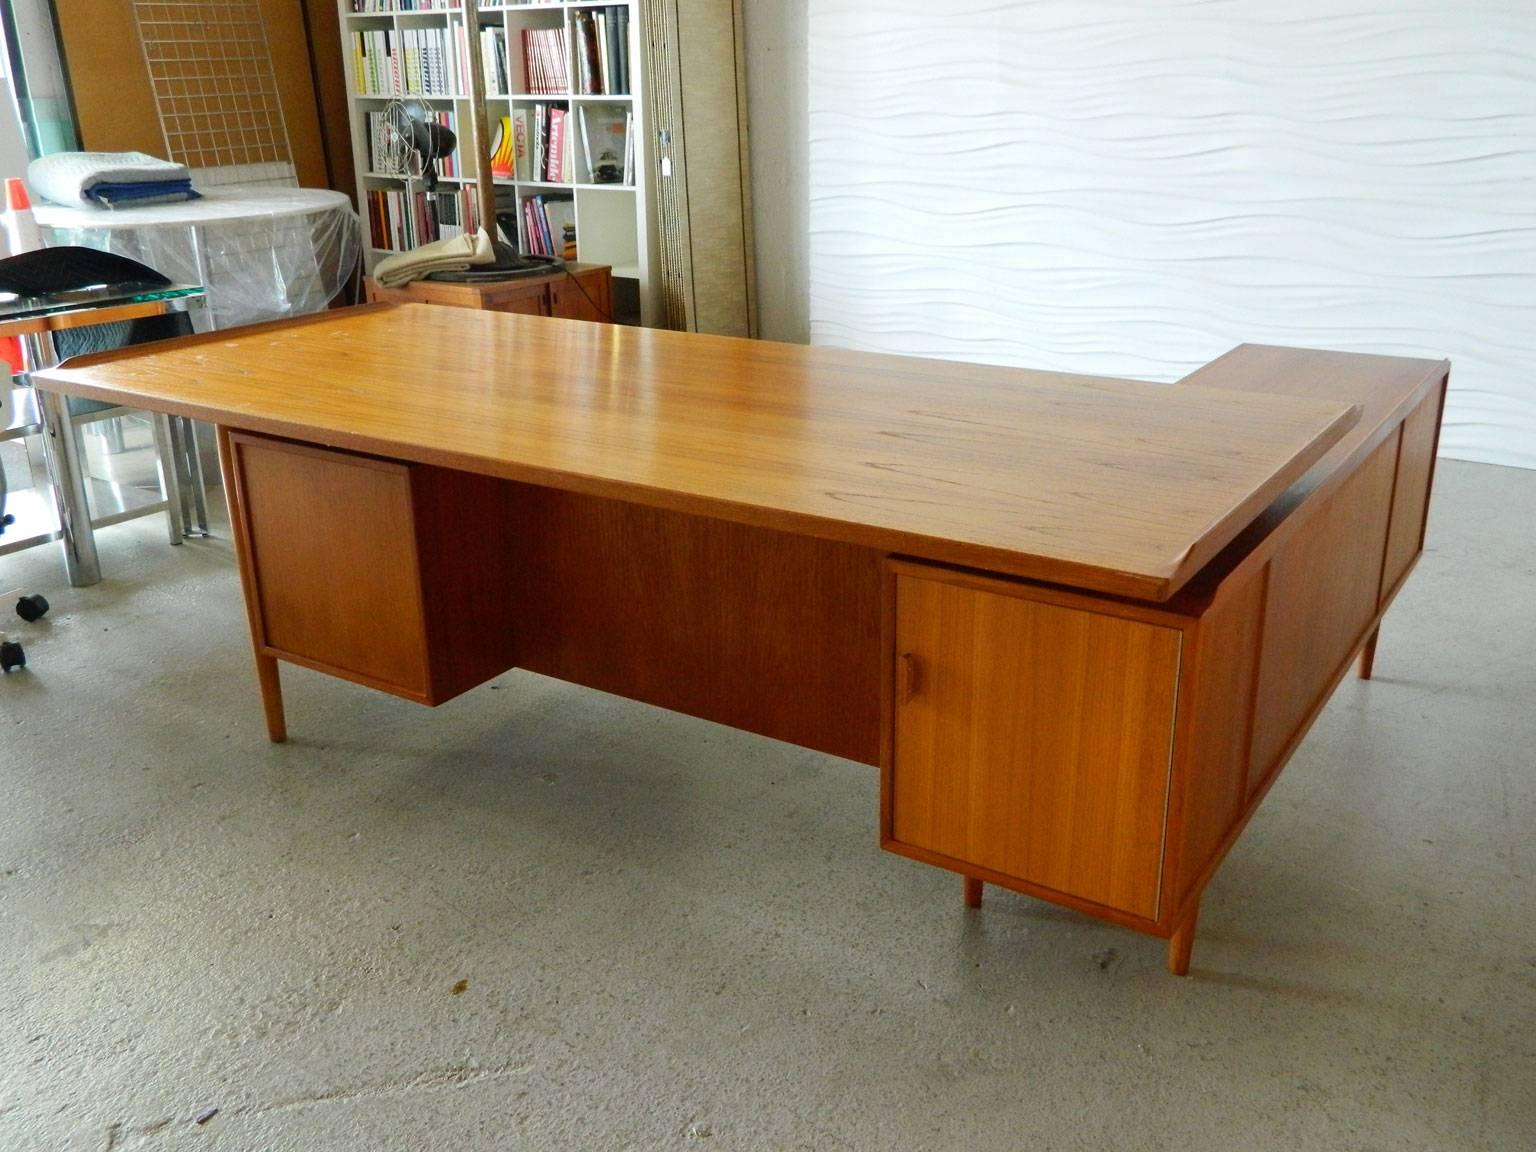 Stunning teak executive desk designed by Arne Vodder for Sibast, Denmark. This L-shaped desk has a large work surface (80.25